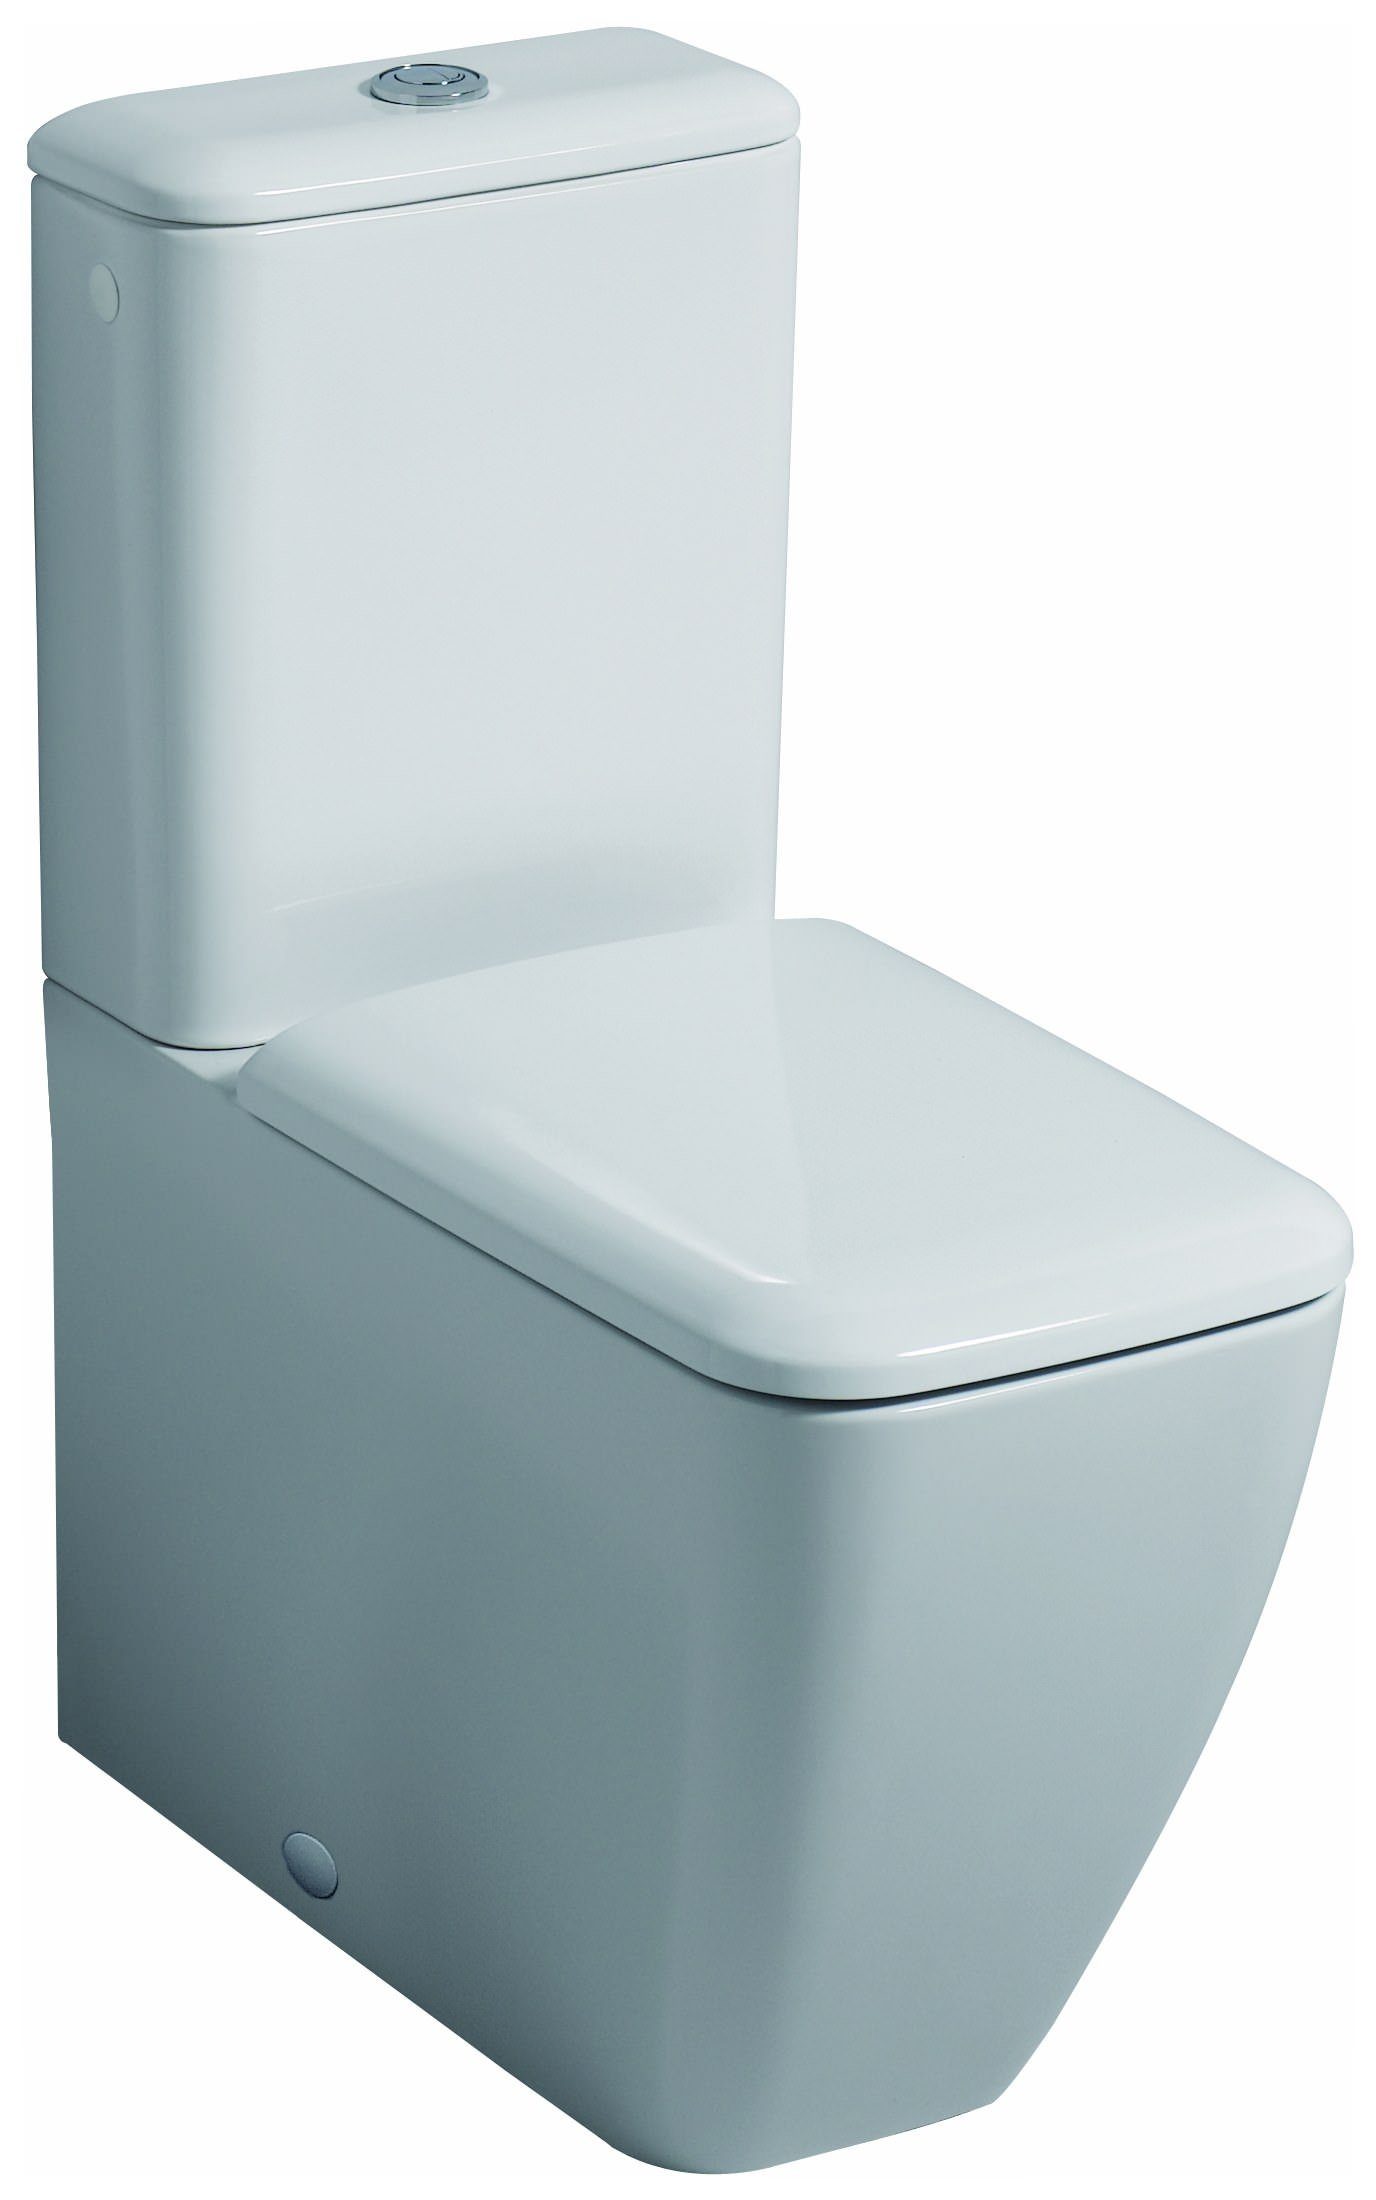 GEBERIT WC-Sitz it!, WC-Sitz mit Absenkautomatik Scharniere: Metall - Weiß Alpin